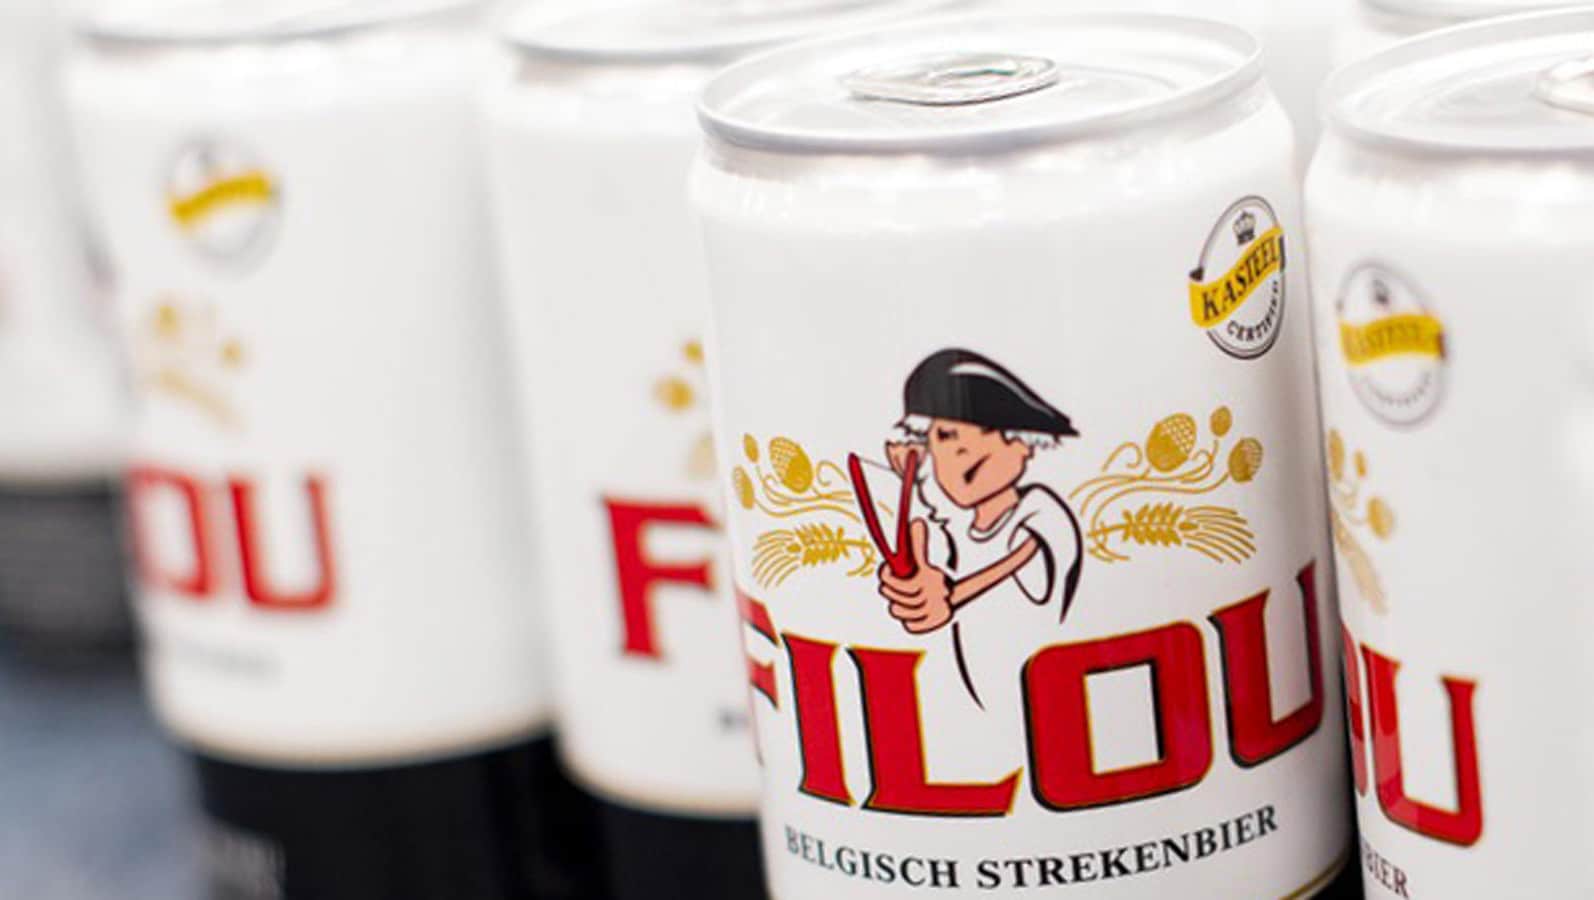 Vanhonsebrouck marca un hito en el mercado belga de especialidades cerveceras